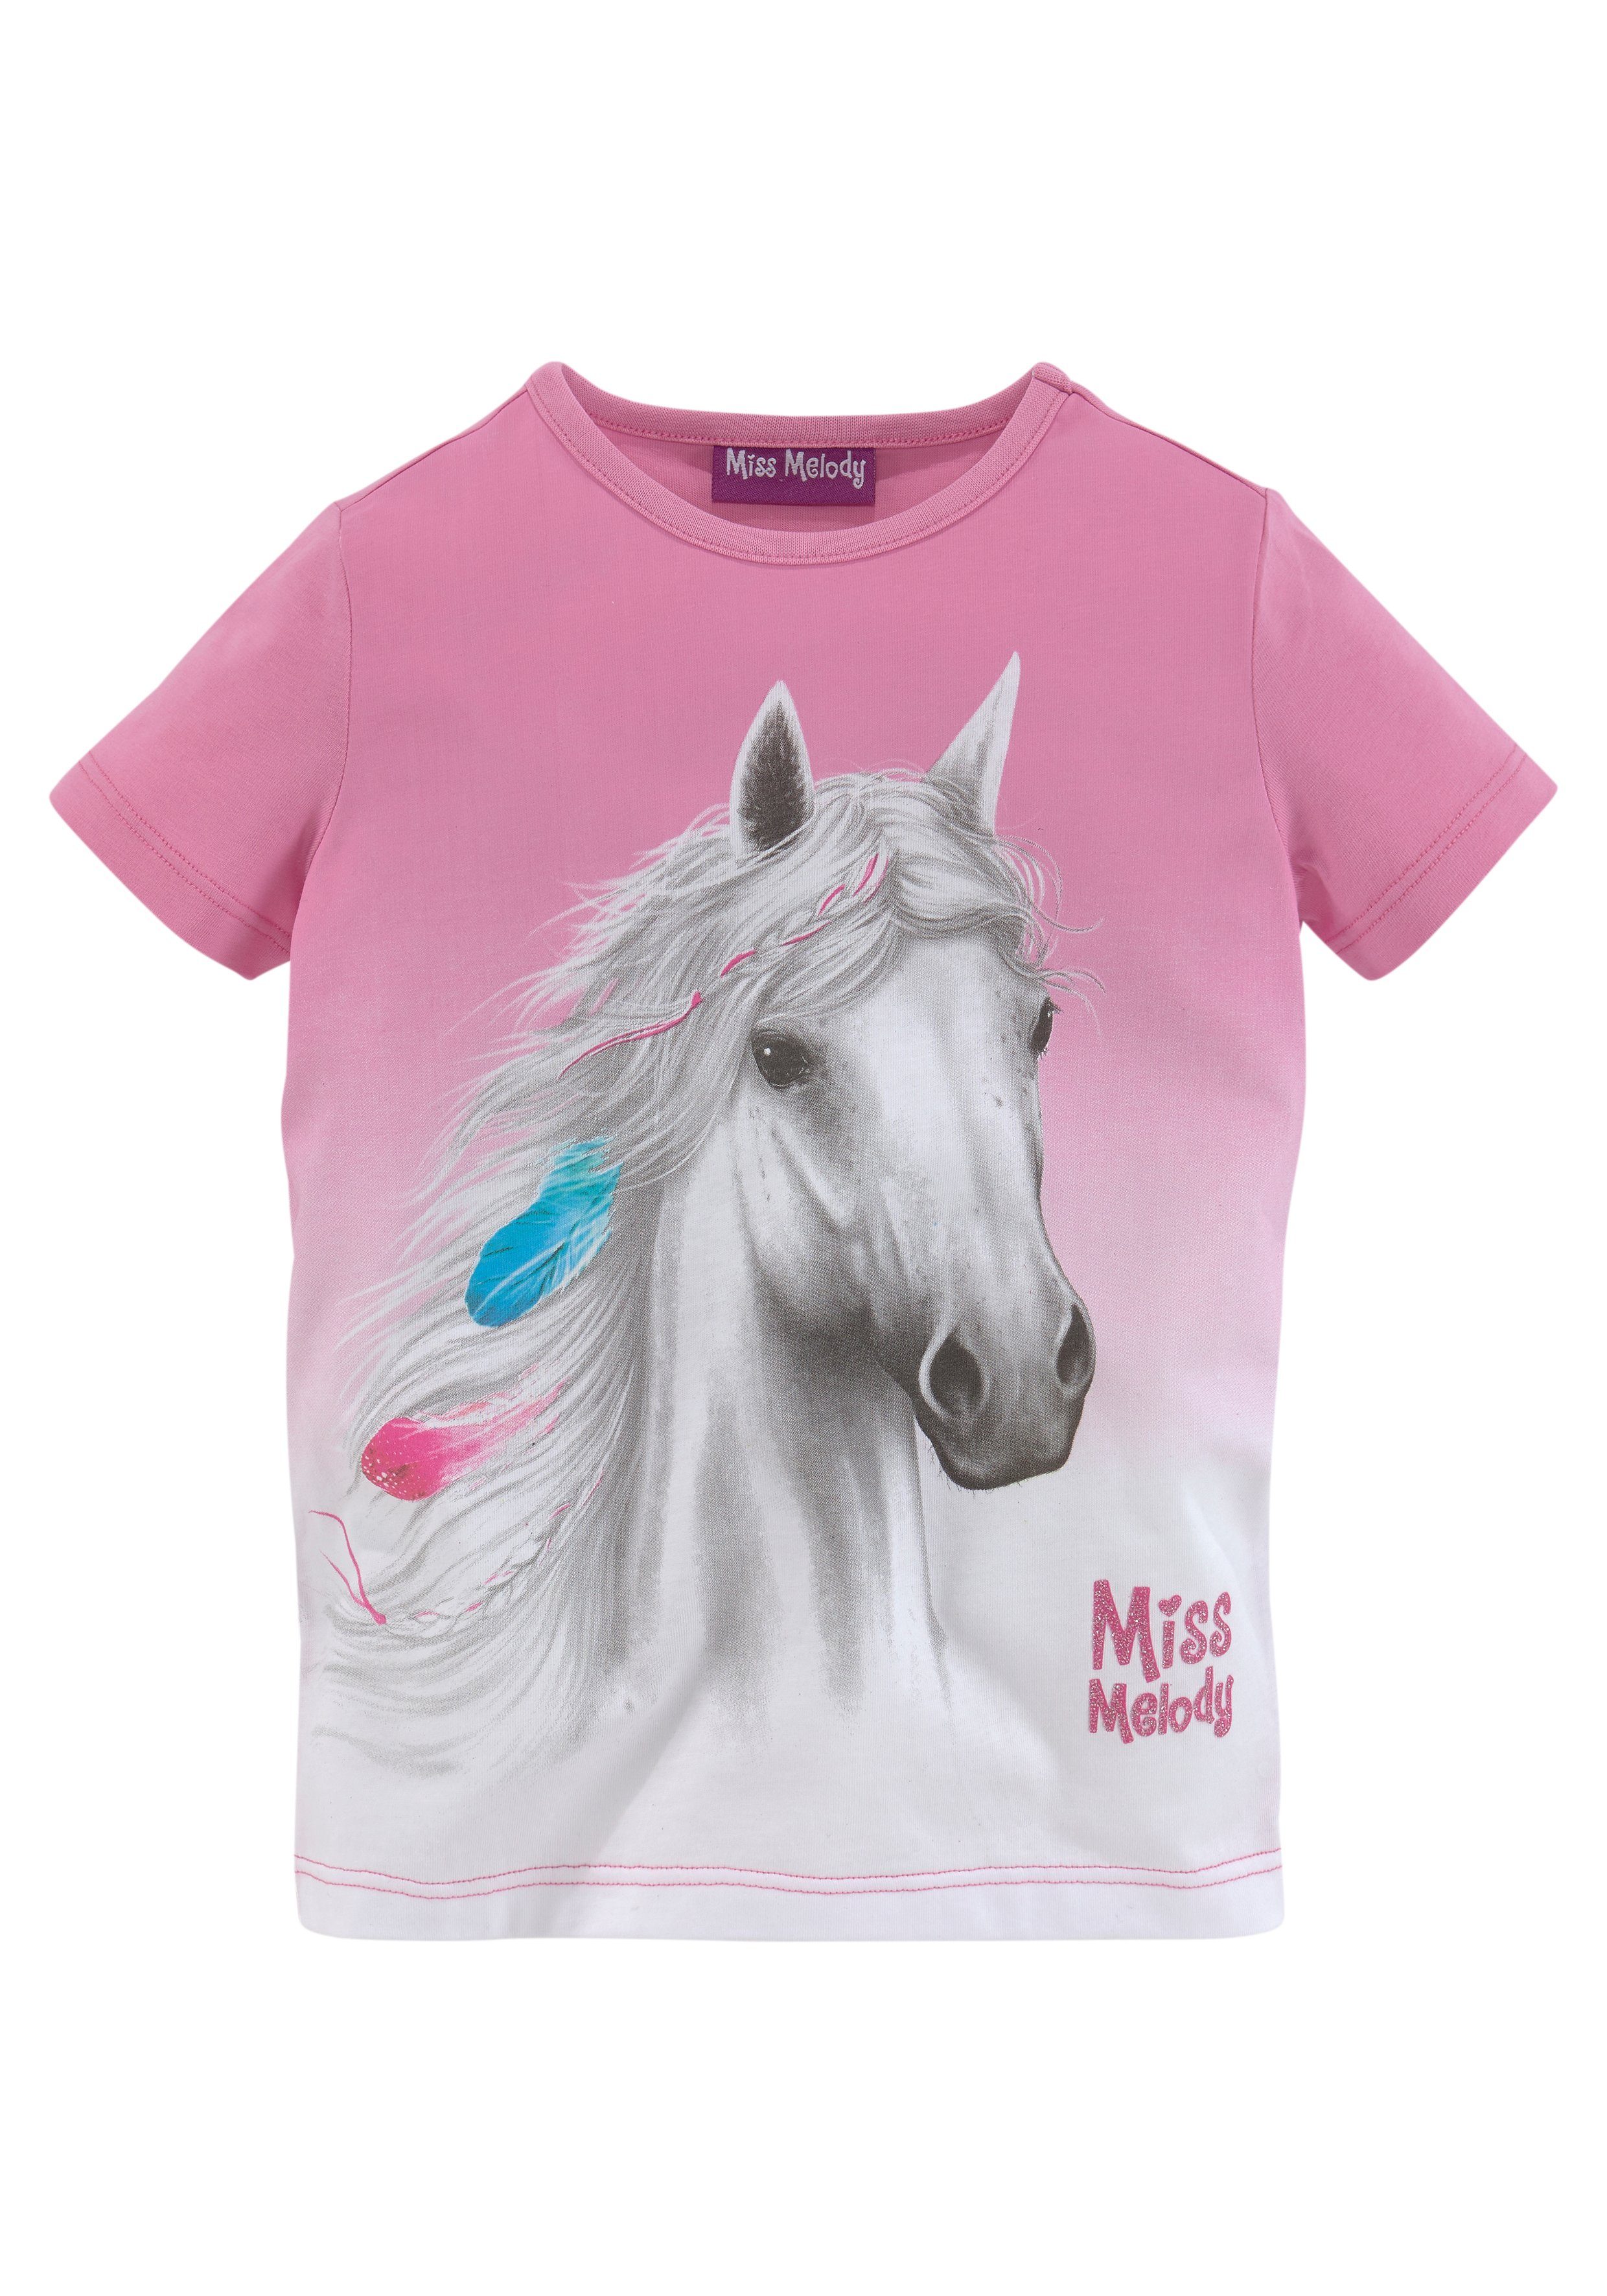 Miss schönem T-Shirt Melody mit Pferdemotiv